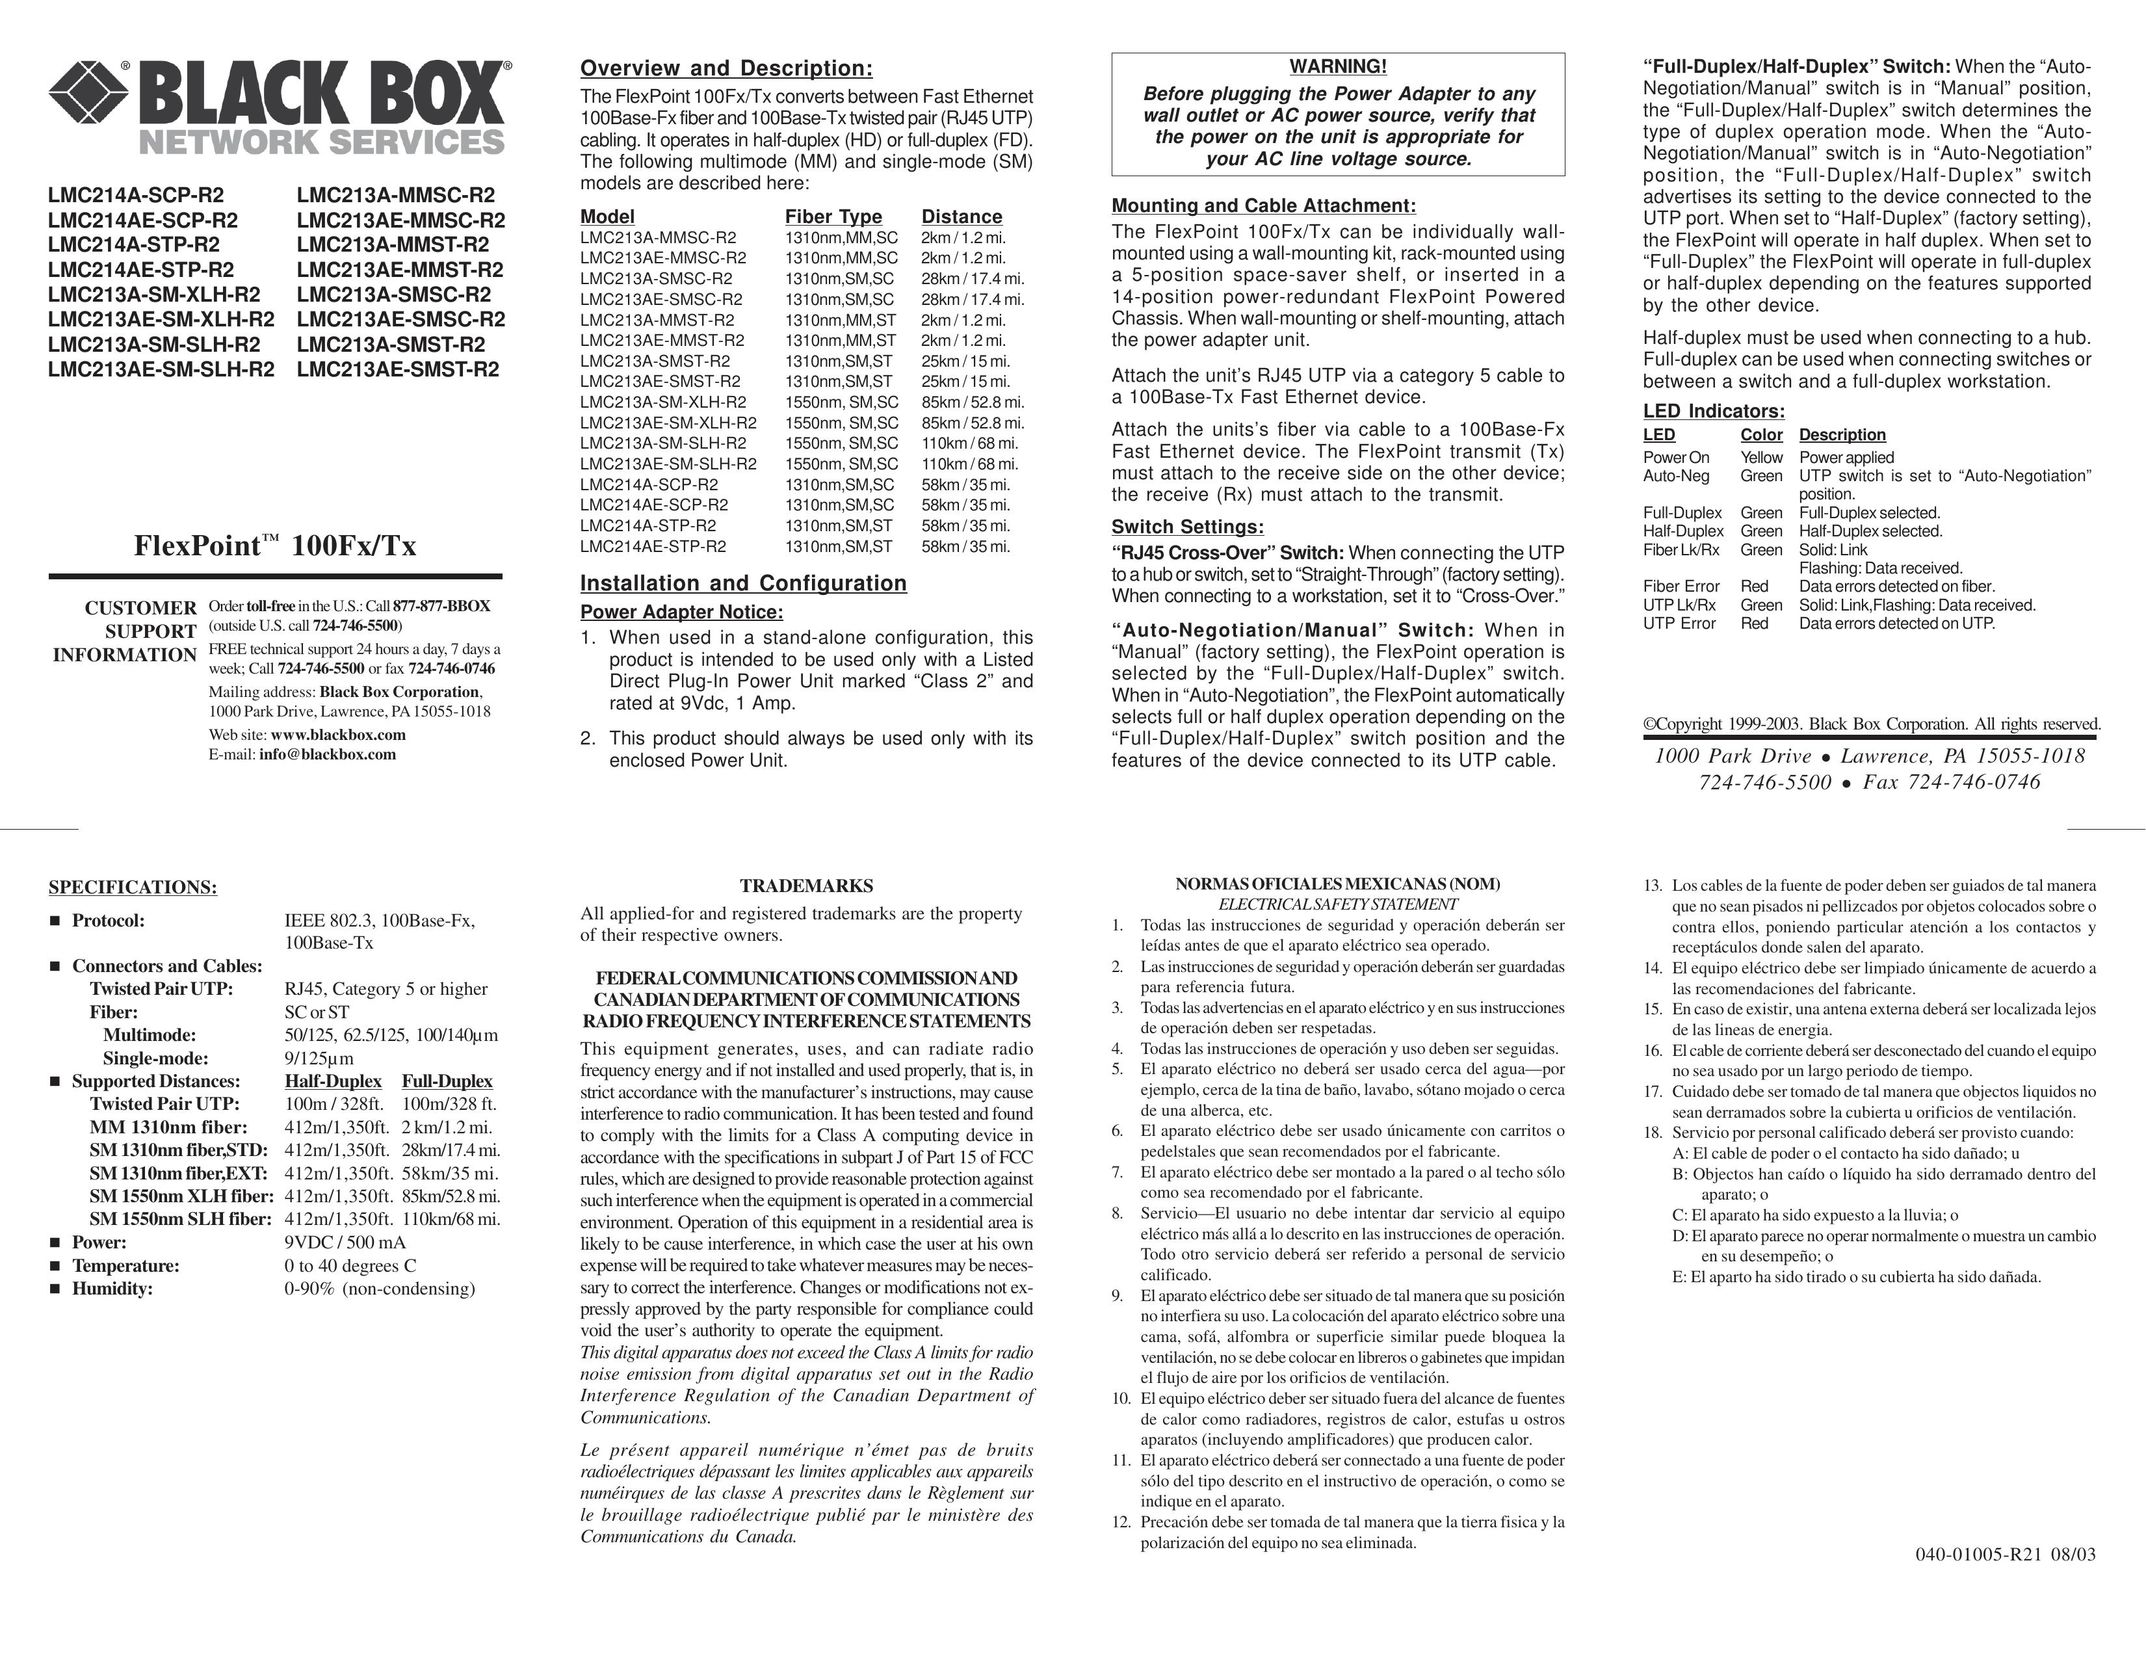 Black Box LMC213AE-SMST-R2 Power Supply User Manual